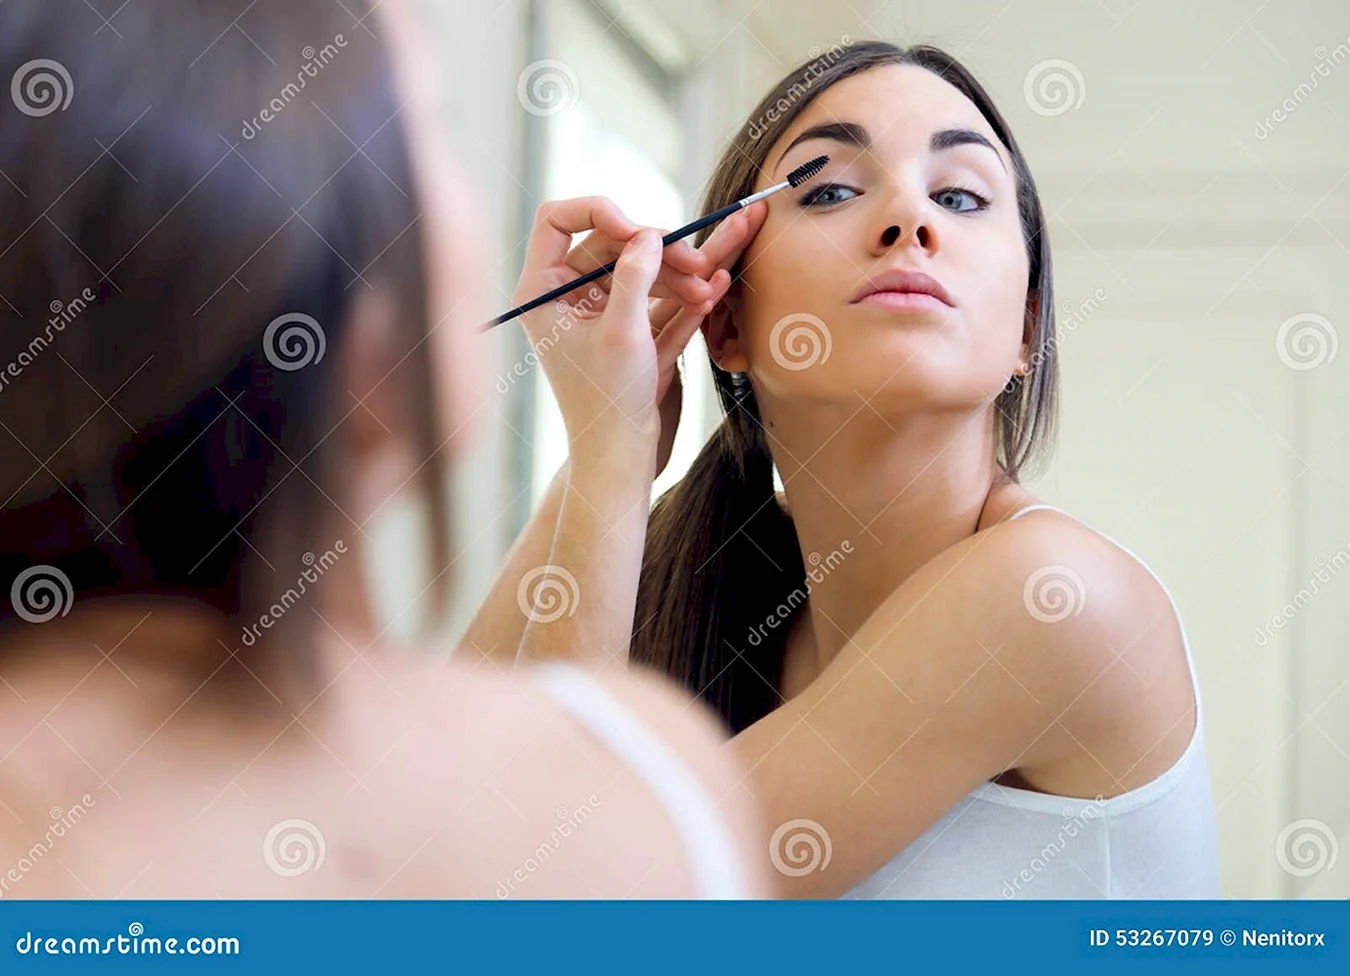 Девушка делает макияж перед зеркалом